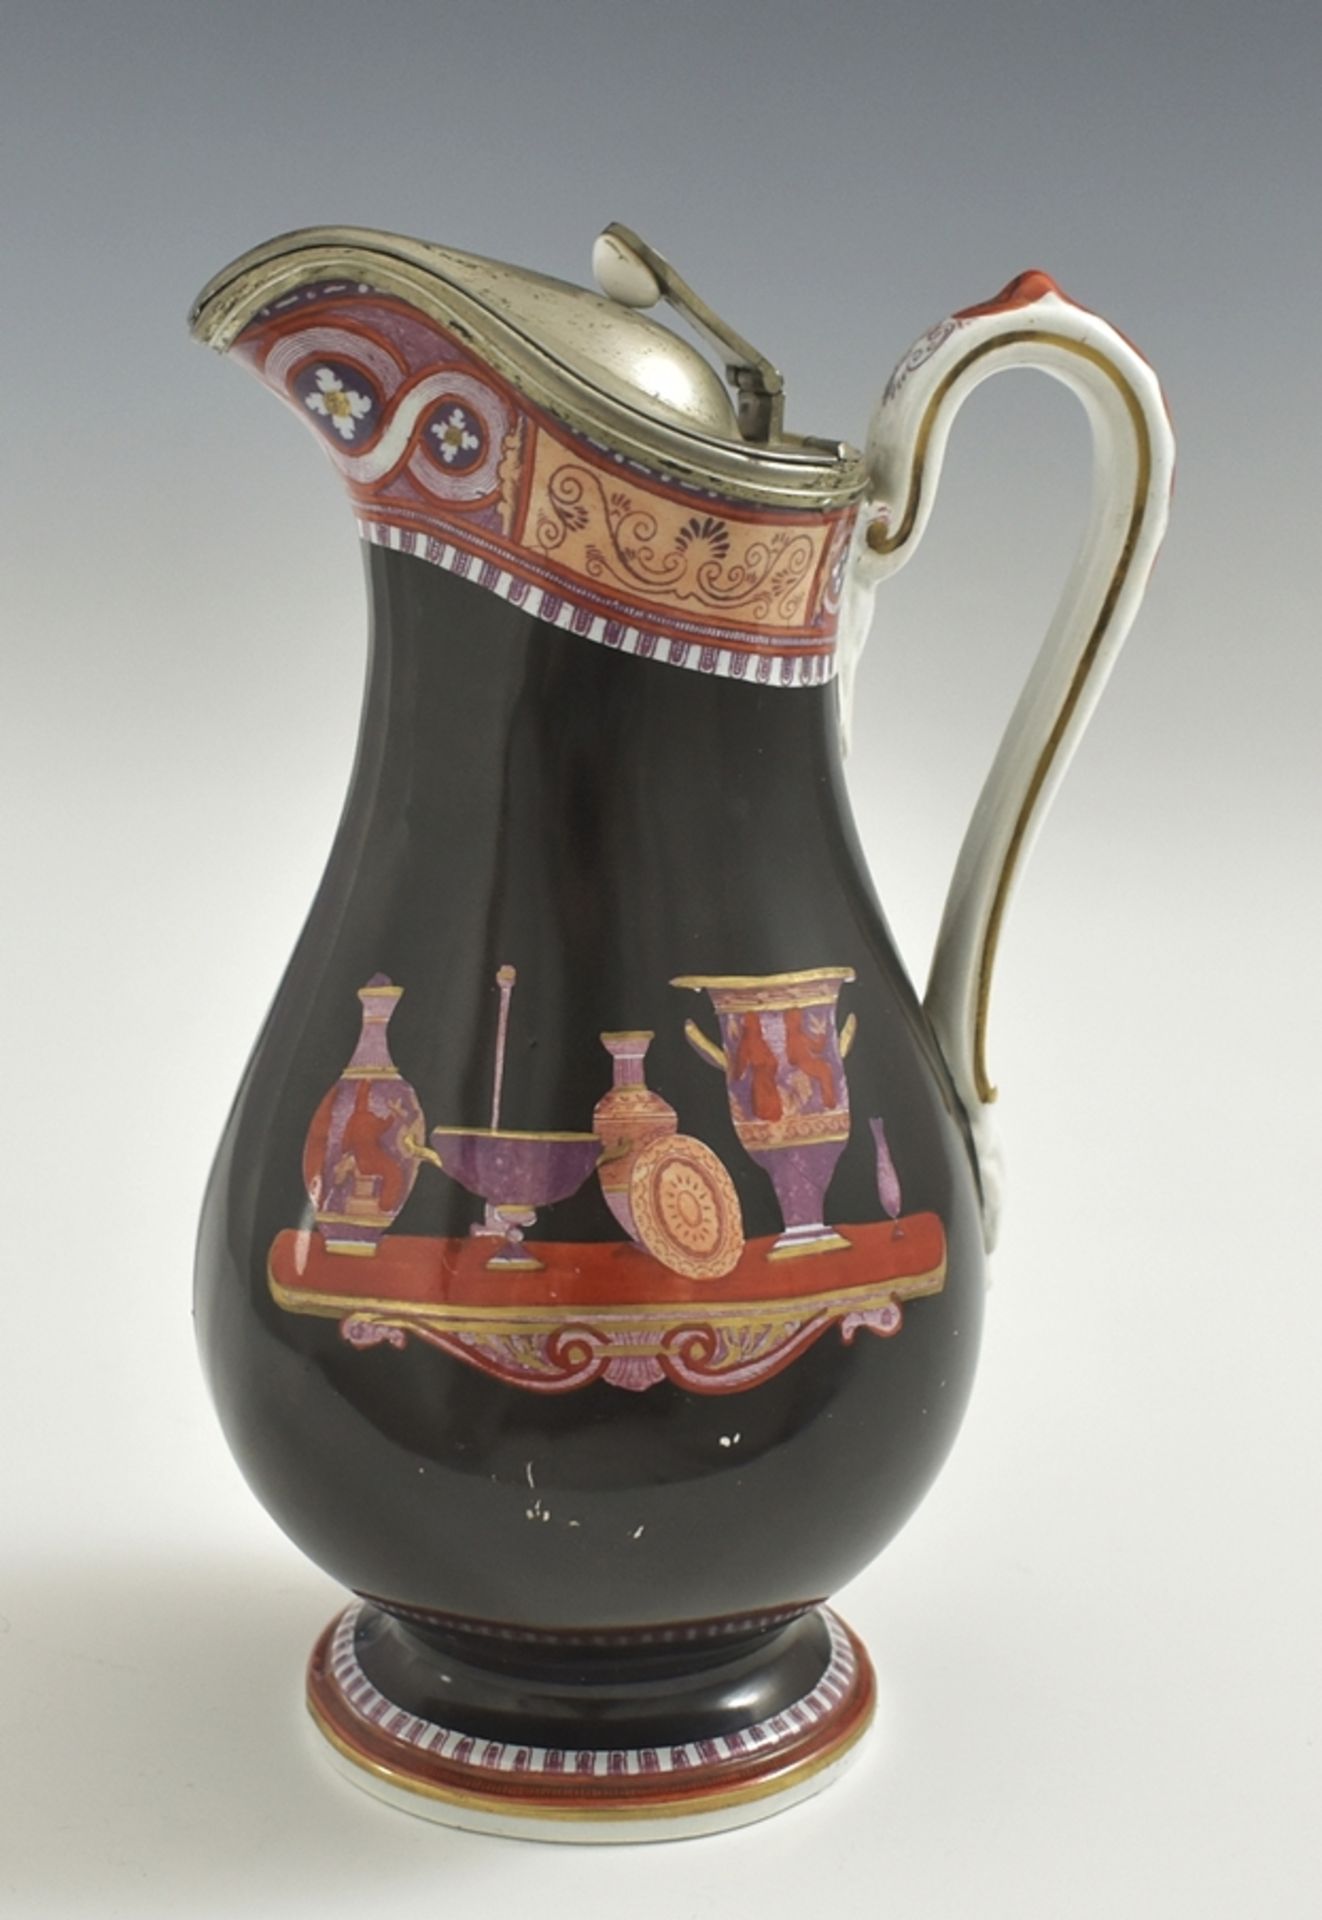 Steingutkrug mit Zinndeckel und antikischer Vasendekoration. England um 1840. H. 22.5 cm